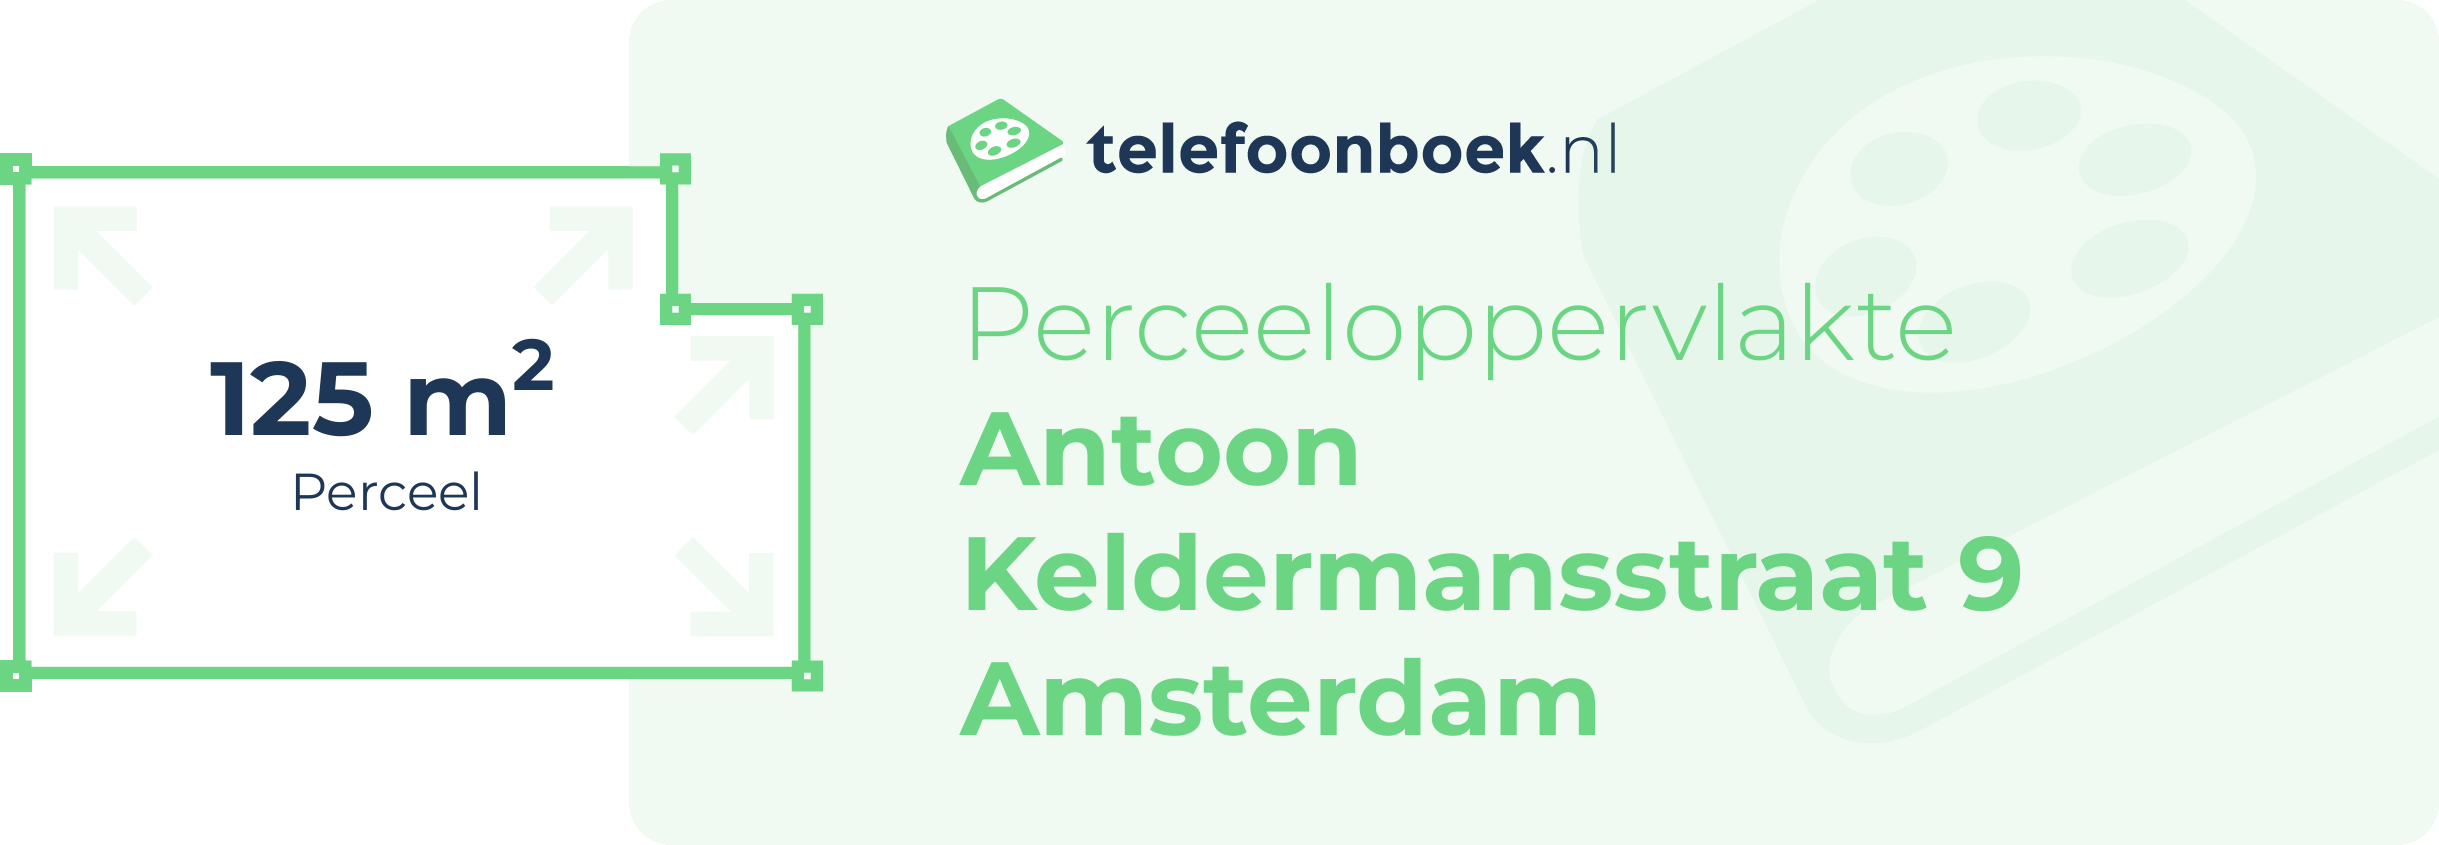 Perceeloppervlakte Antoon Keldermansstraat 9 Amsterdam